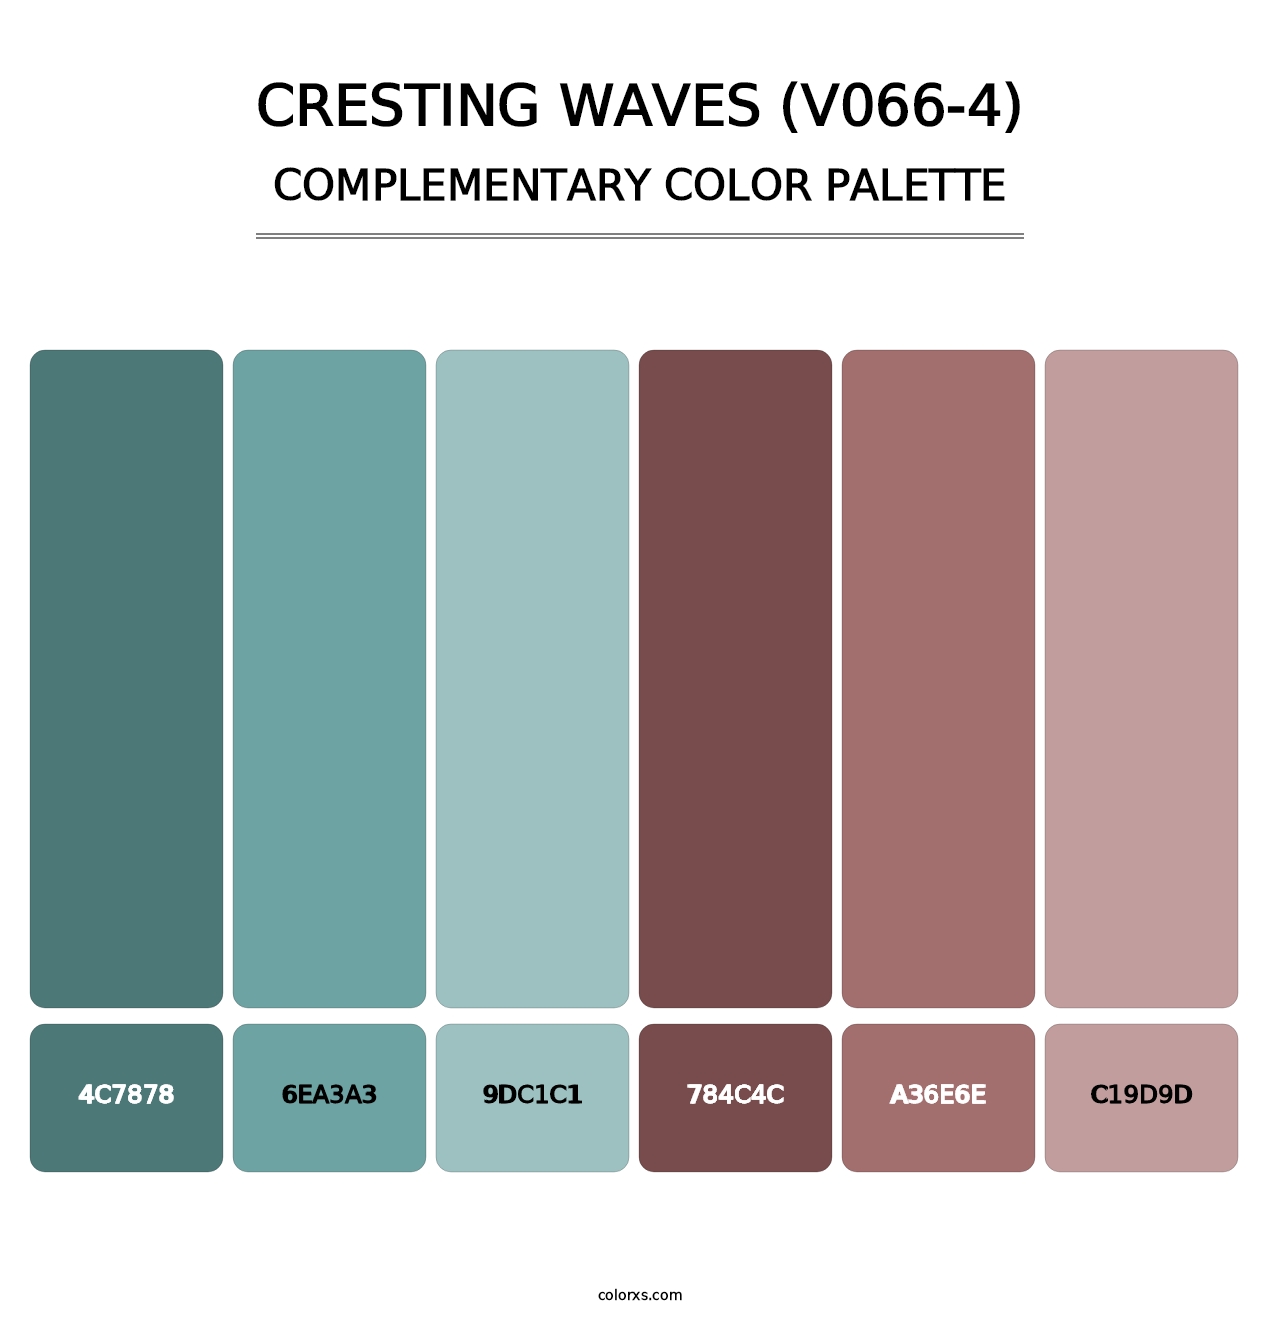 Cresting Waves (V066-4) - Complementary Color Palette